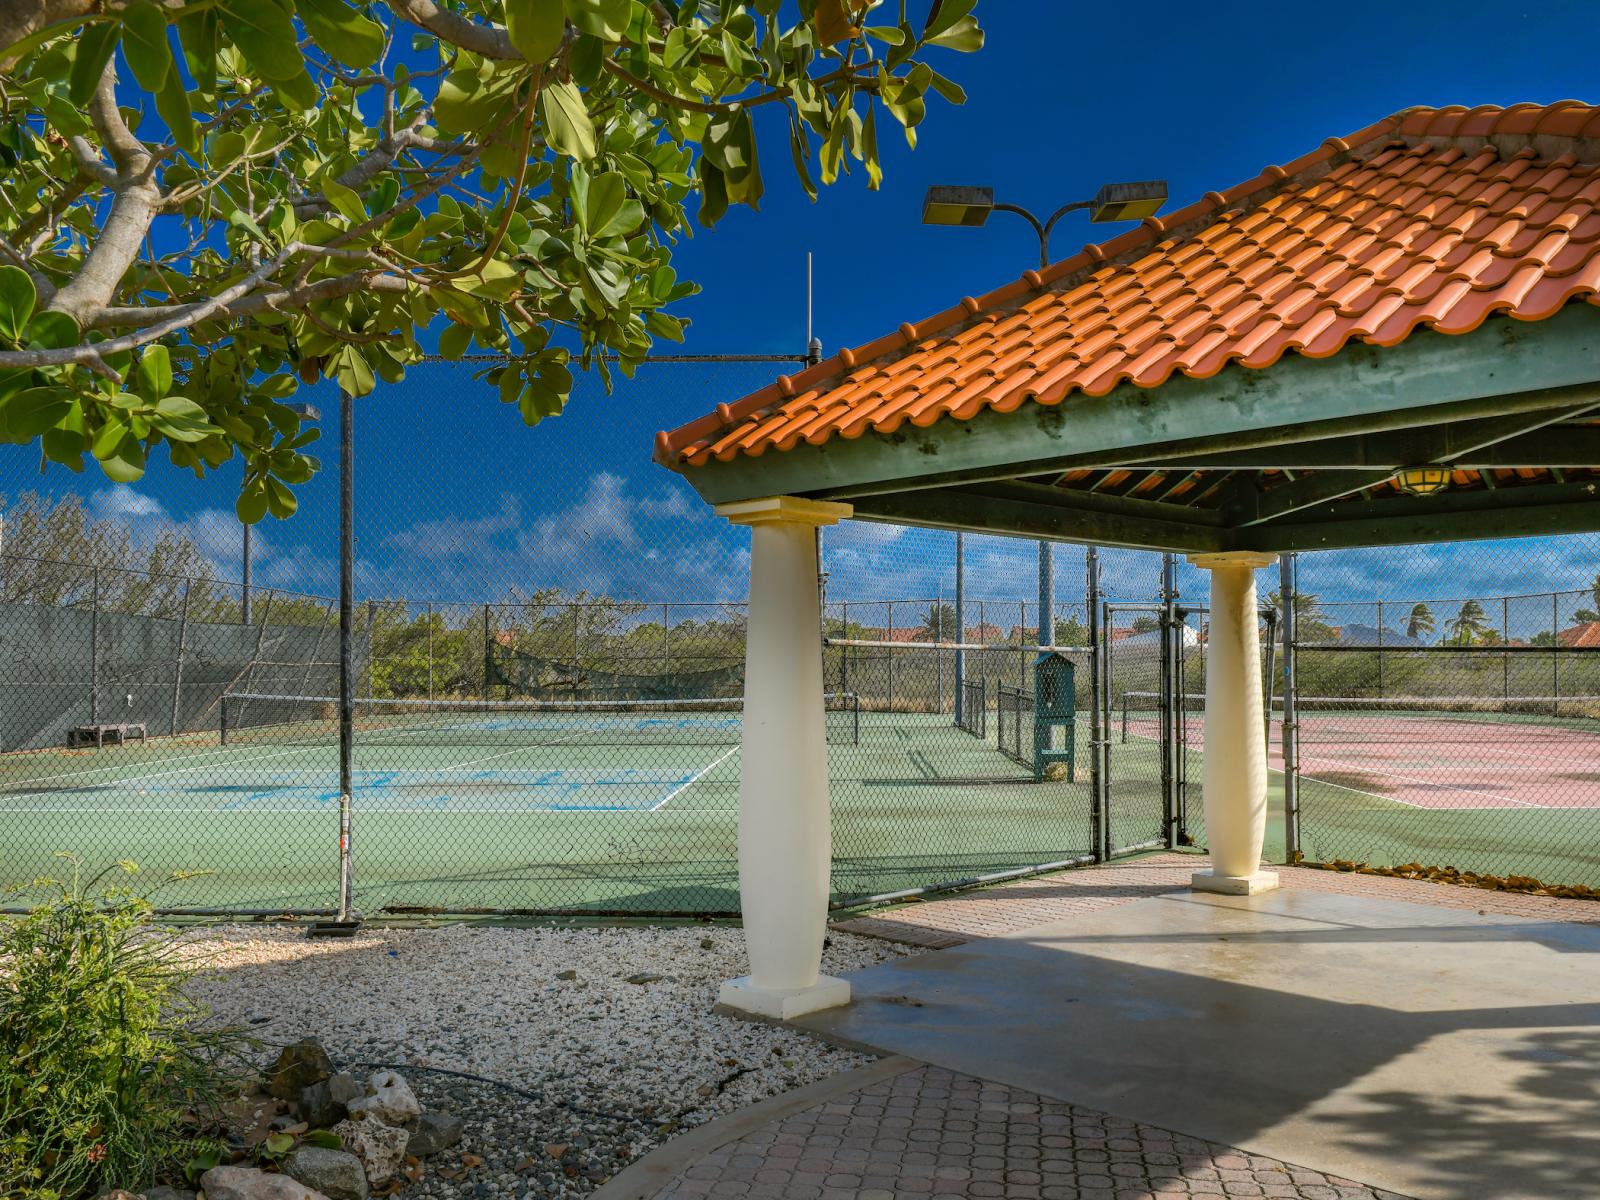 Tierra del Sol Aruba tennis courts